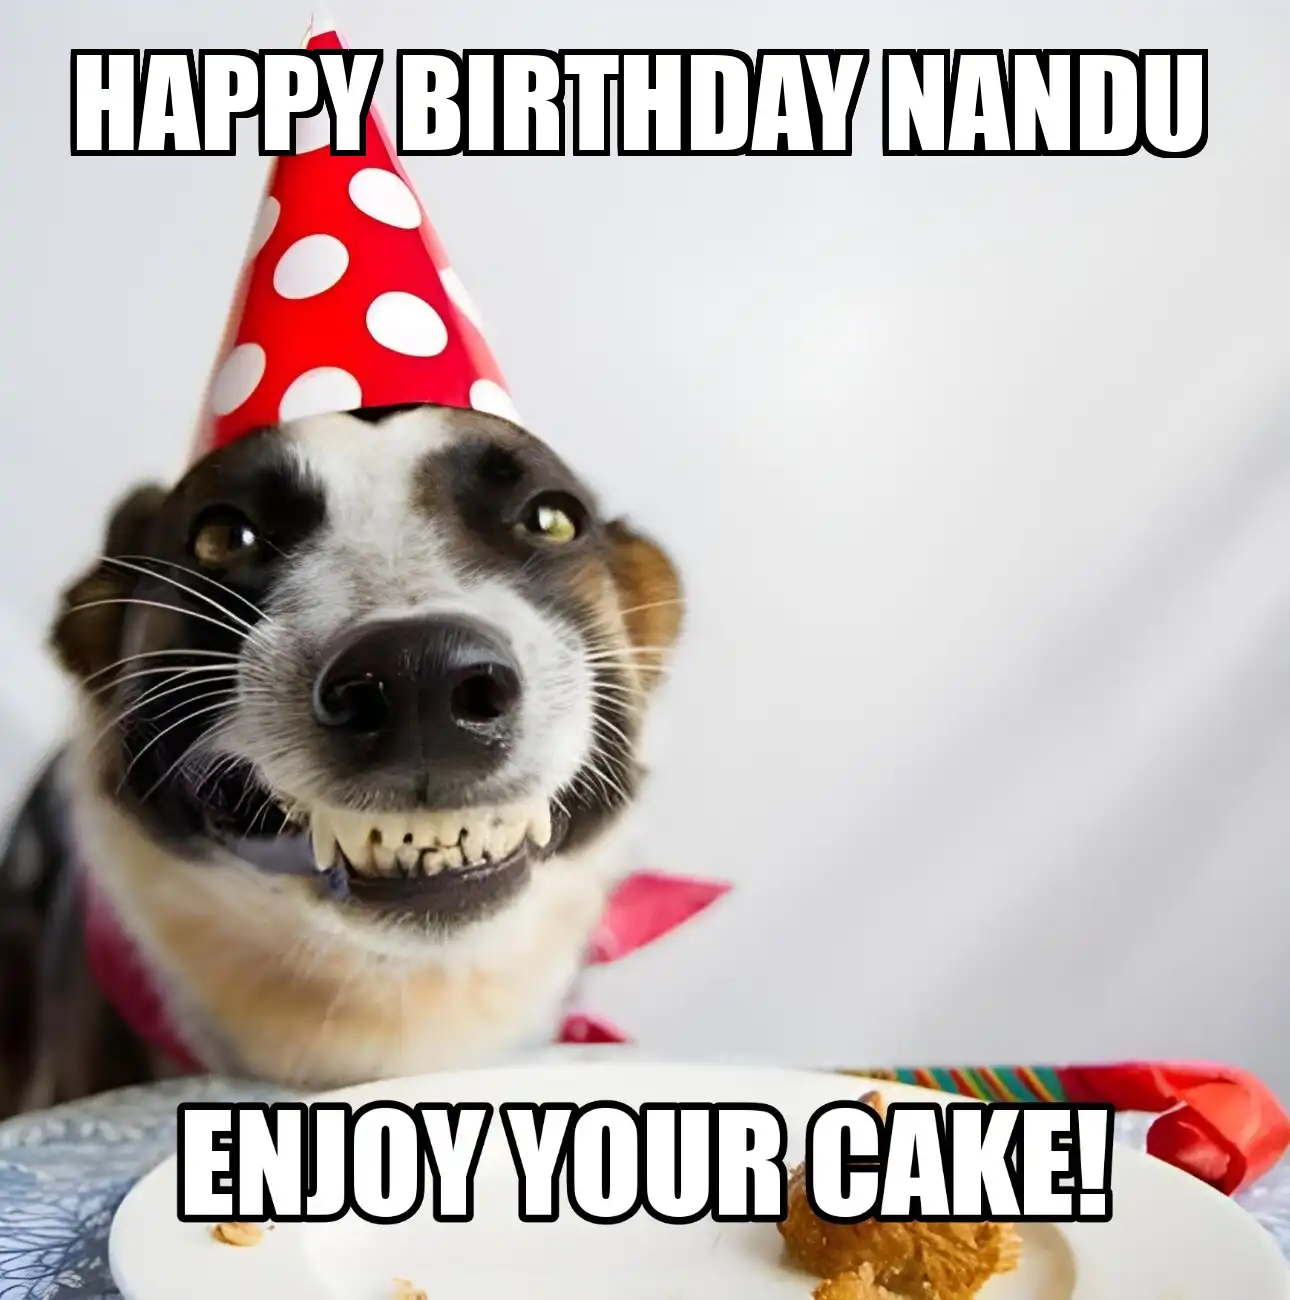 Happy Birthday Nandu Enjoy Your Cake Dog Meme